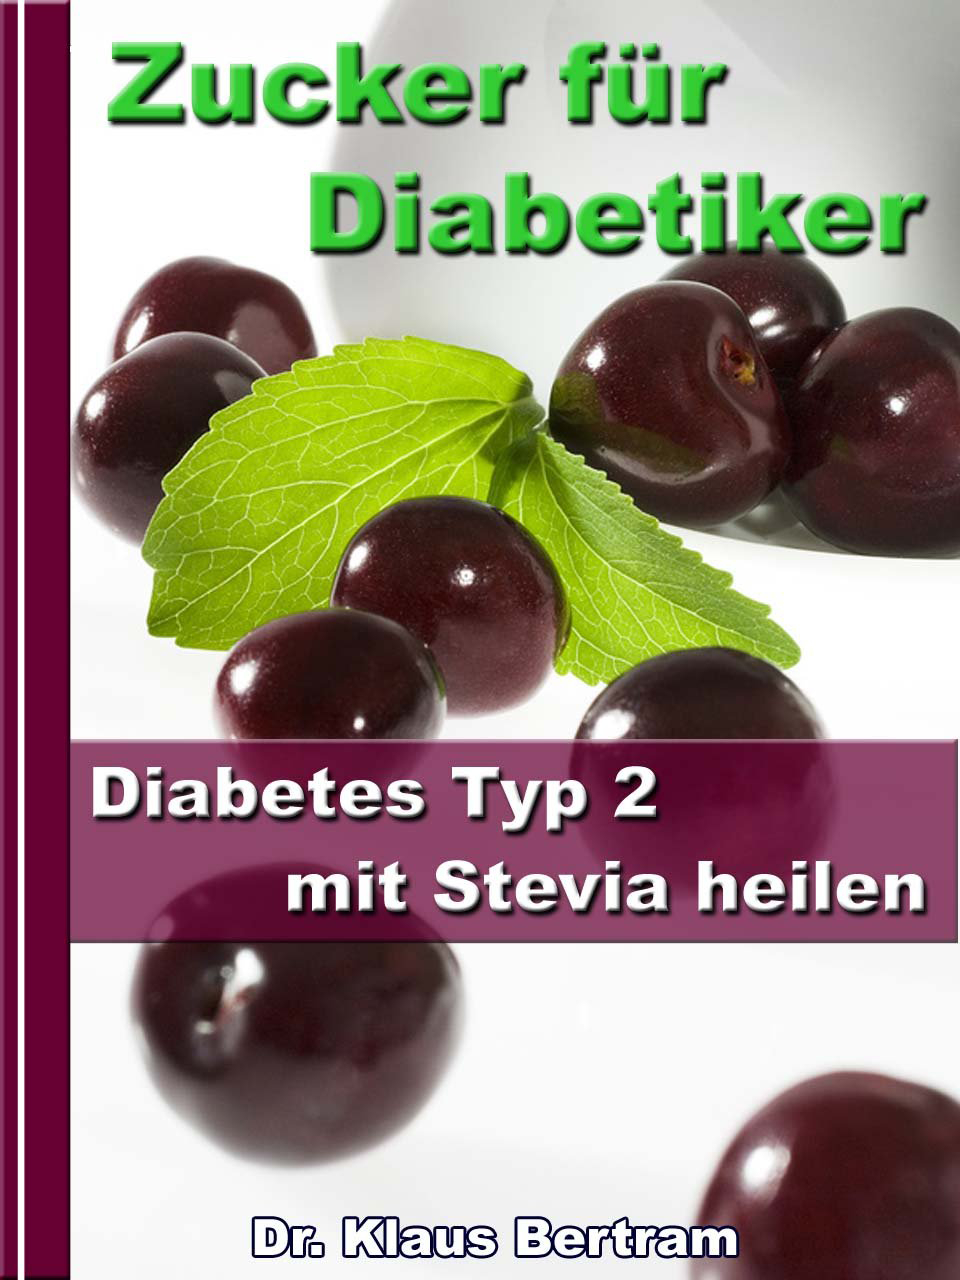 Zucker für Diabetiker - Diabetes Typ 2 mit Stevia heilen - Blutzucker auf natürliche Weise senken ASIN B008C1MU84